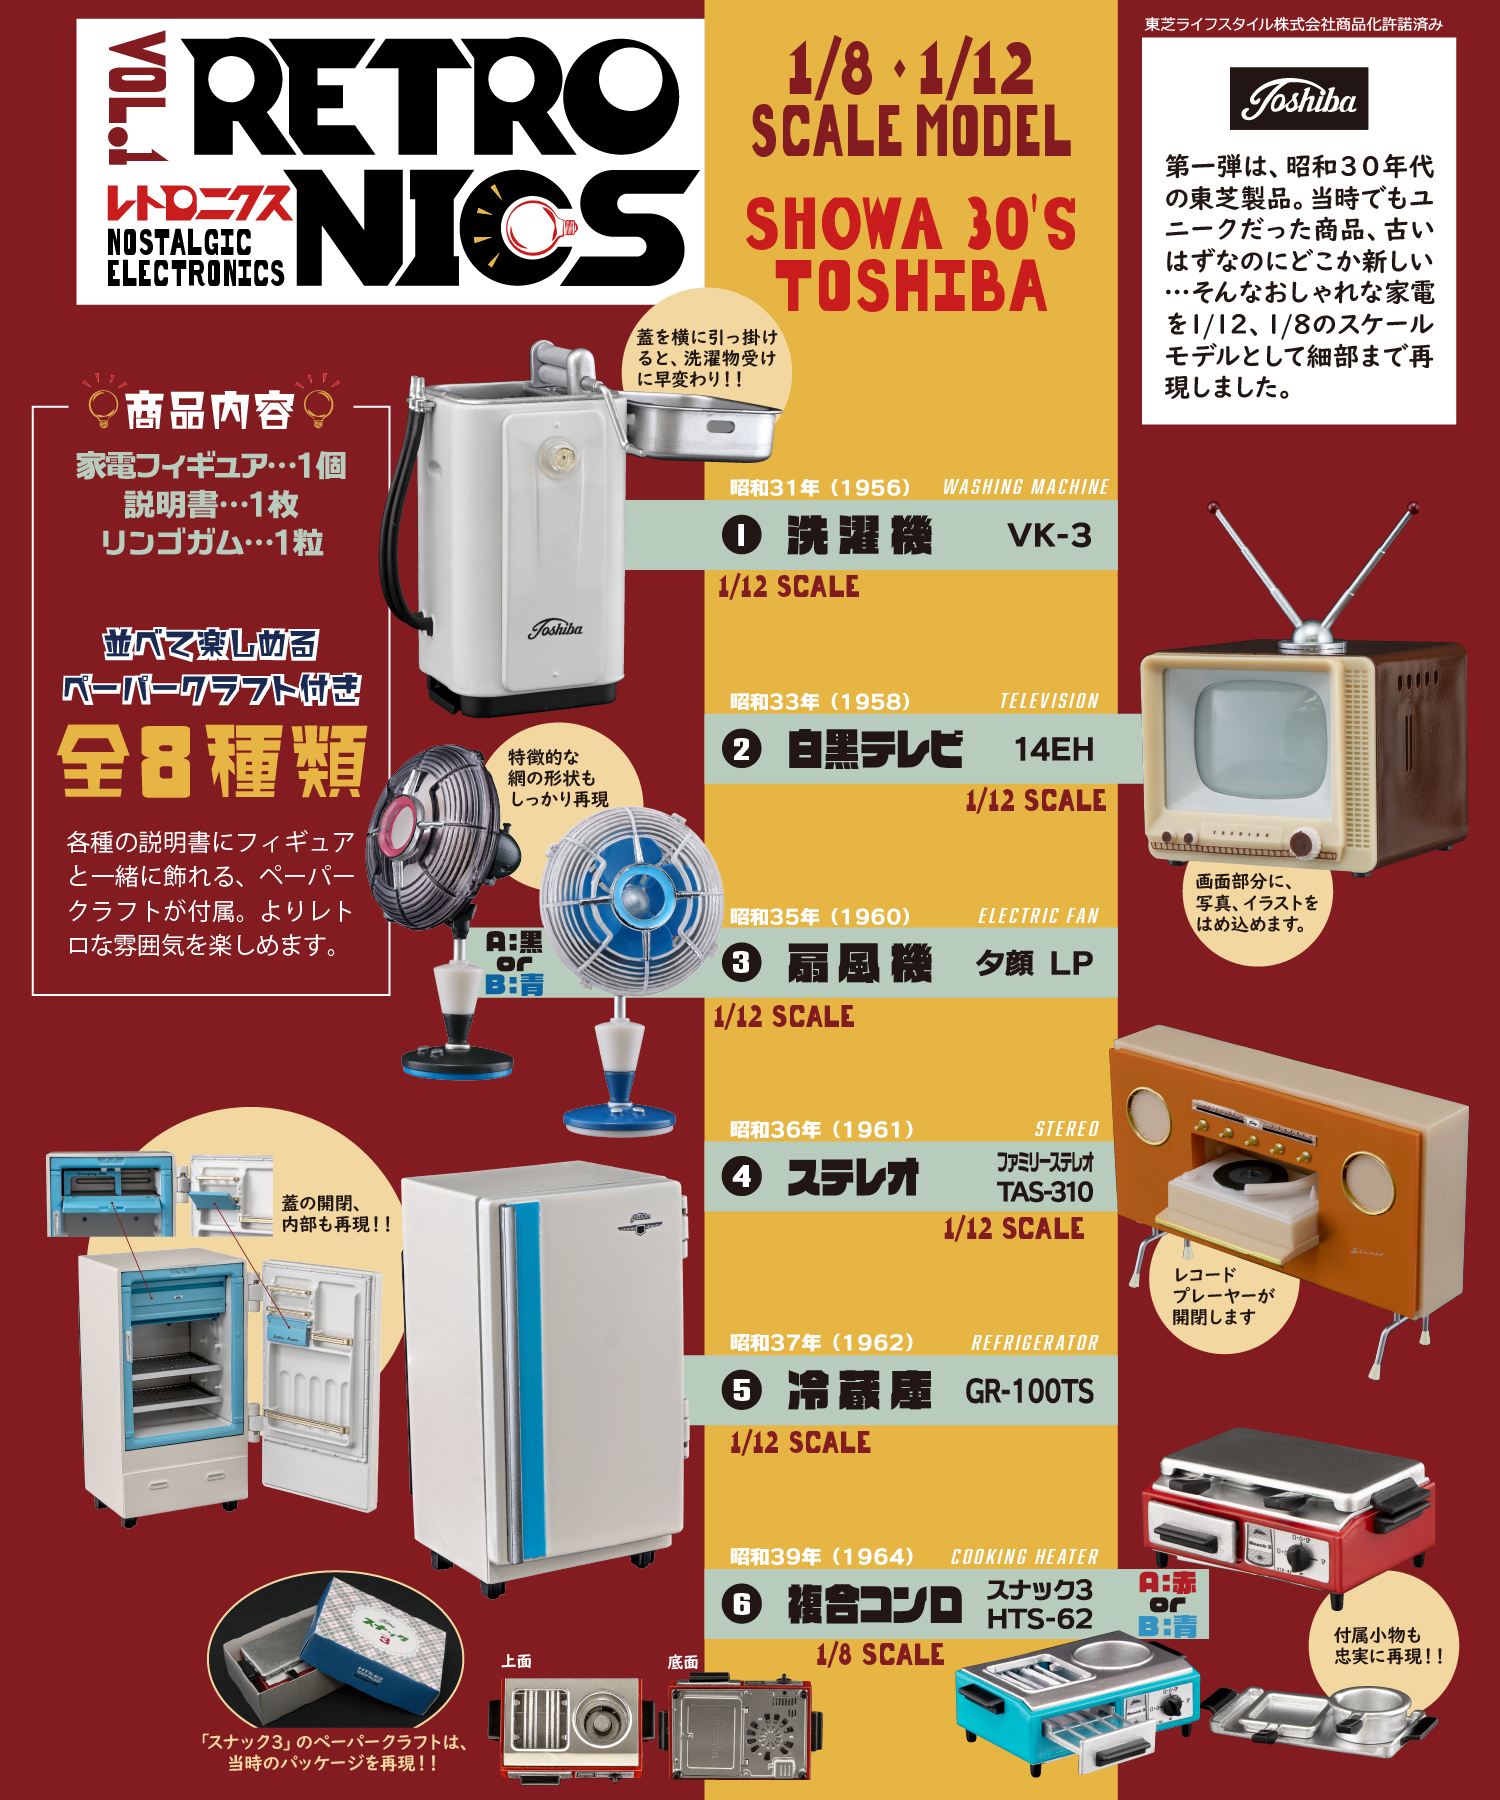 白黒テレビや洗濯機も 昭和30年代の東芝製品ミニチュア食玩 レトロニクス が登場 Hobby Watch